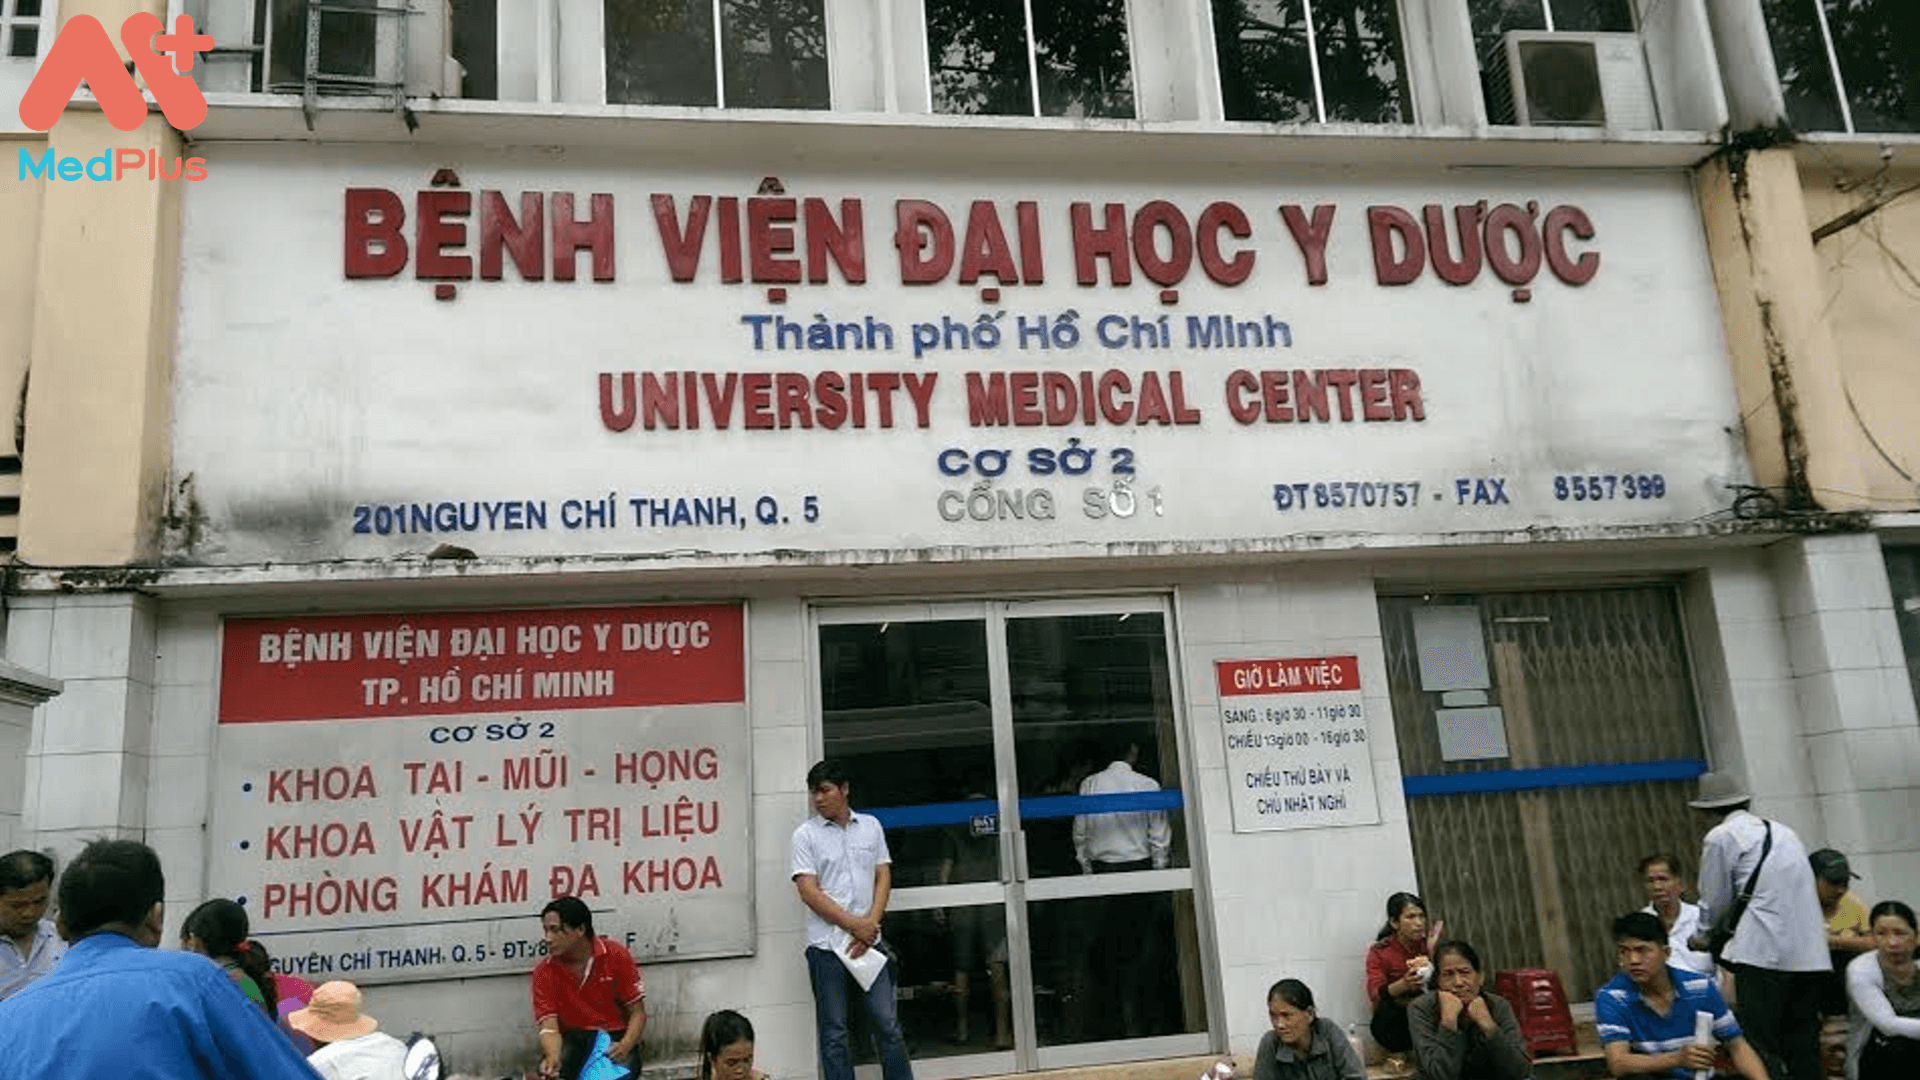 Bệnh viện Đại học Y dược TPHCM Cơ Sở 2